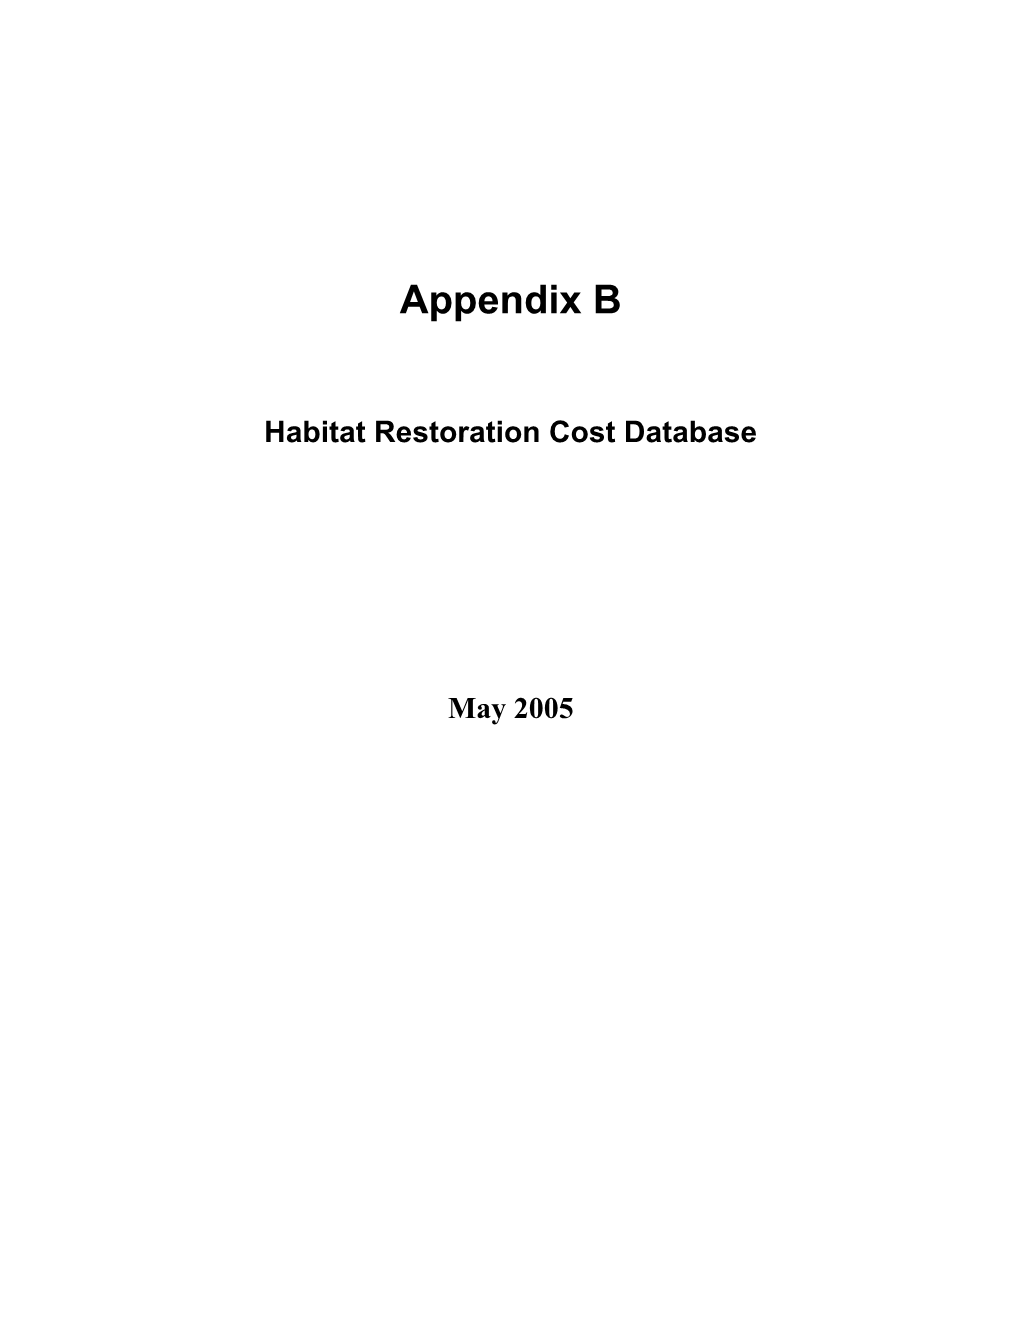 Appendix A: Case Studies